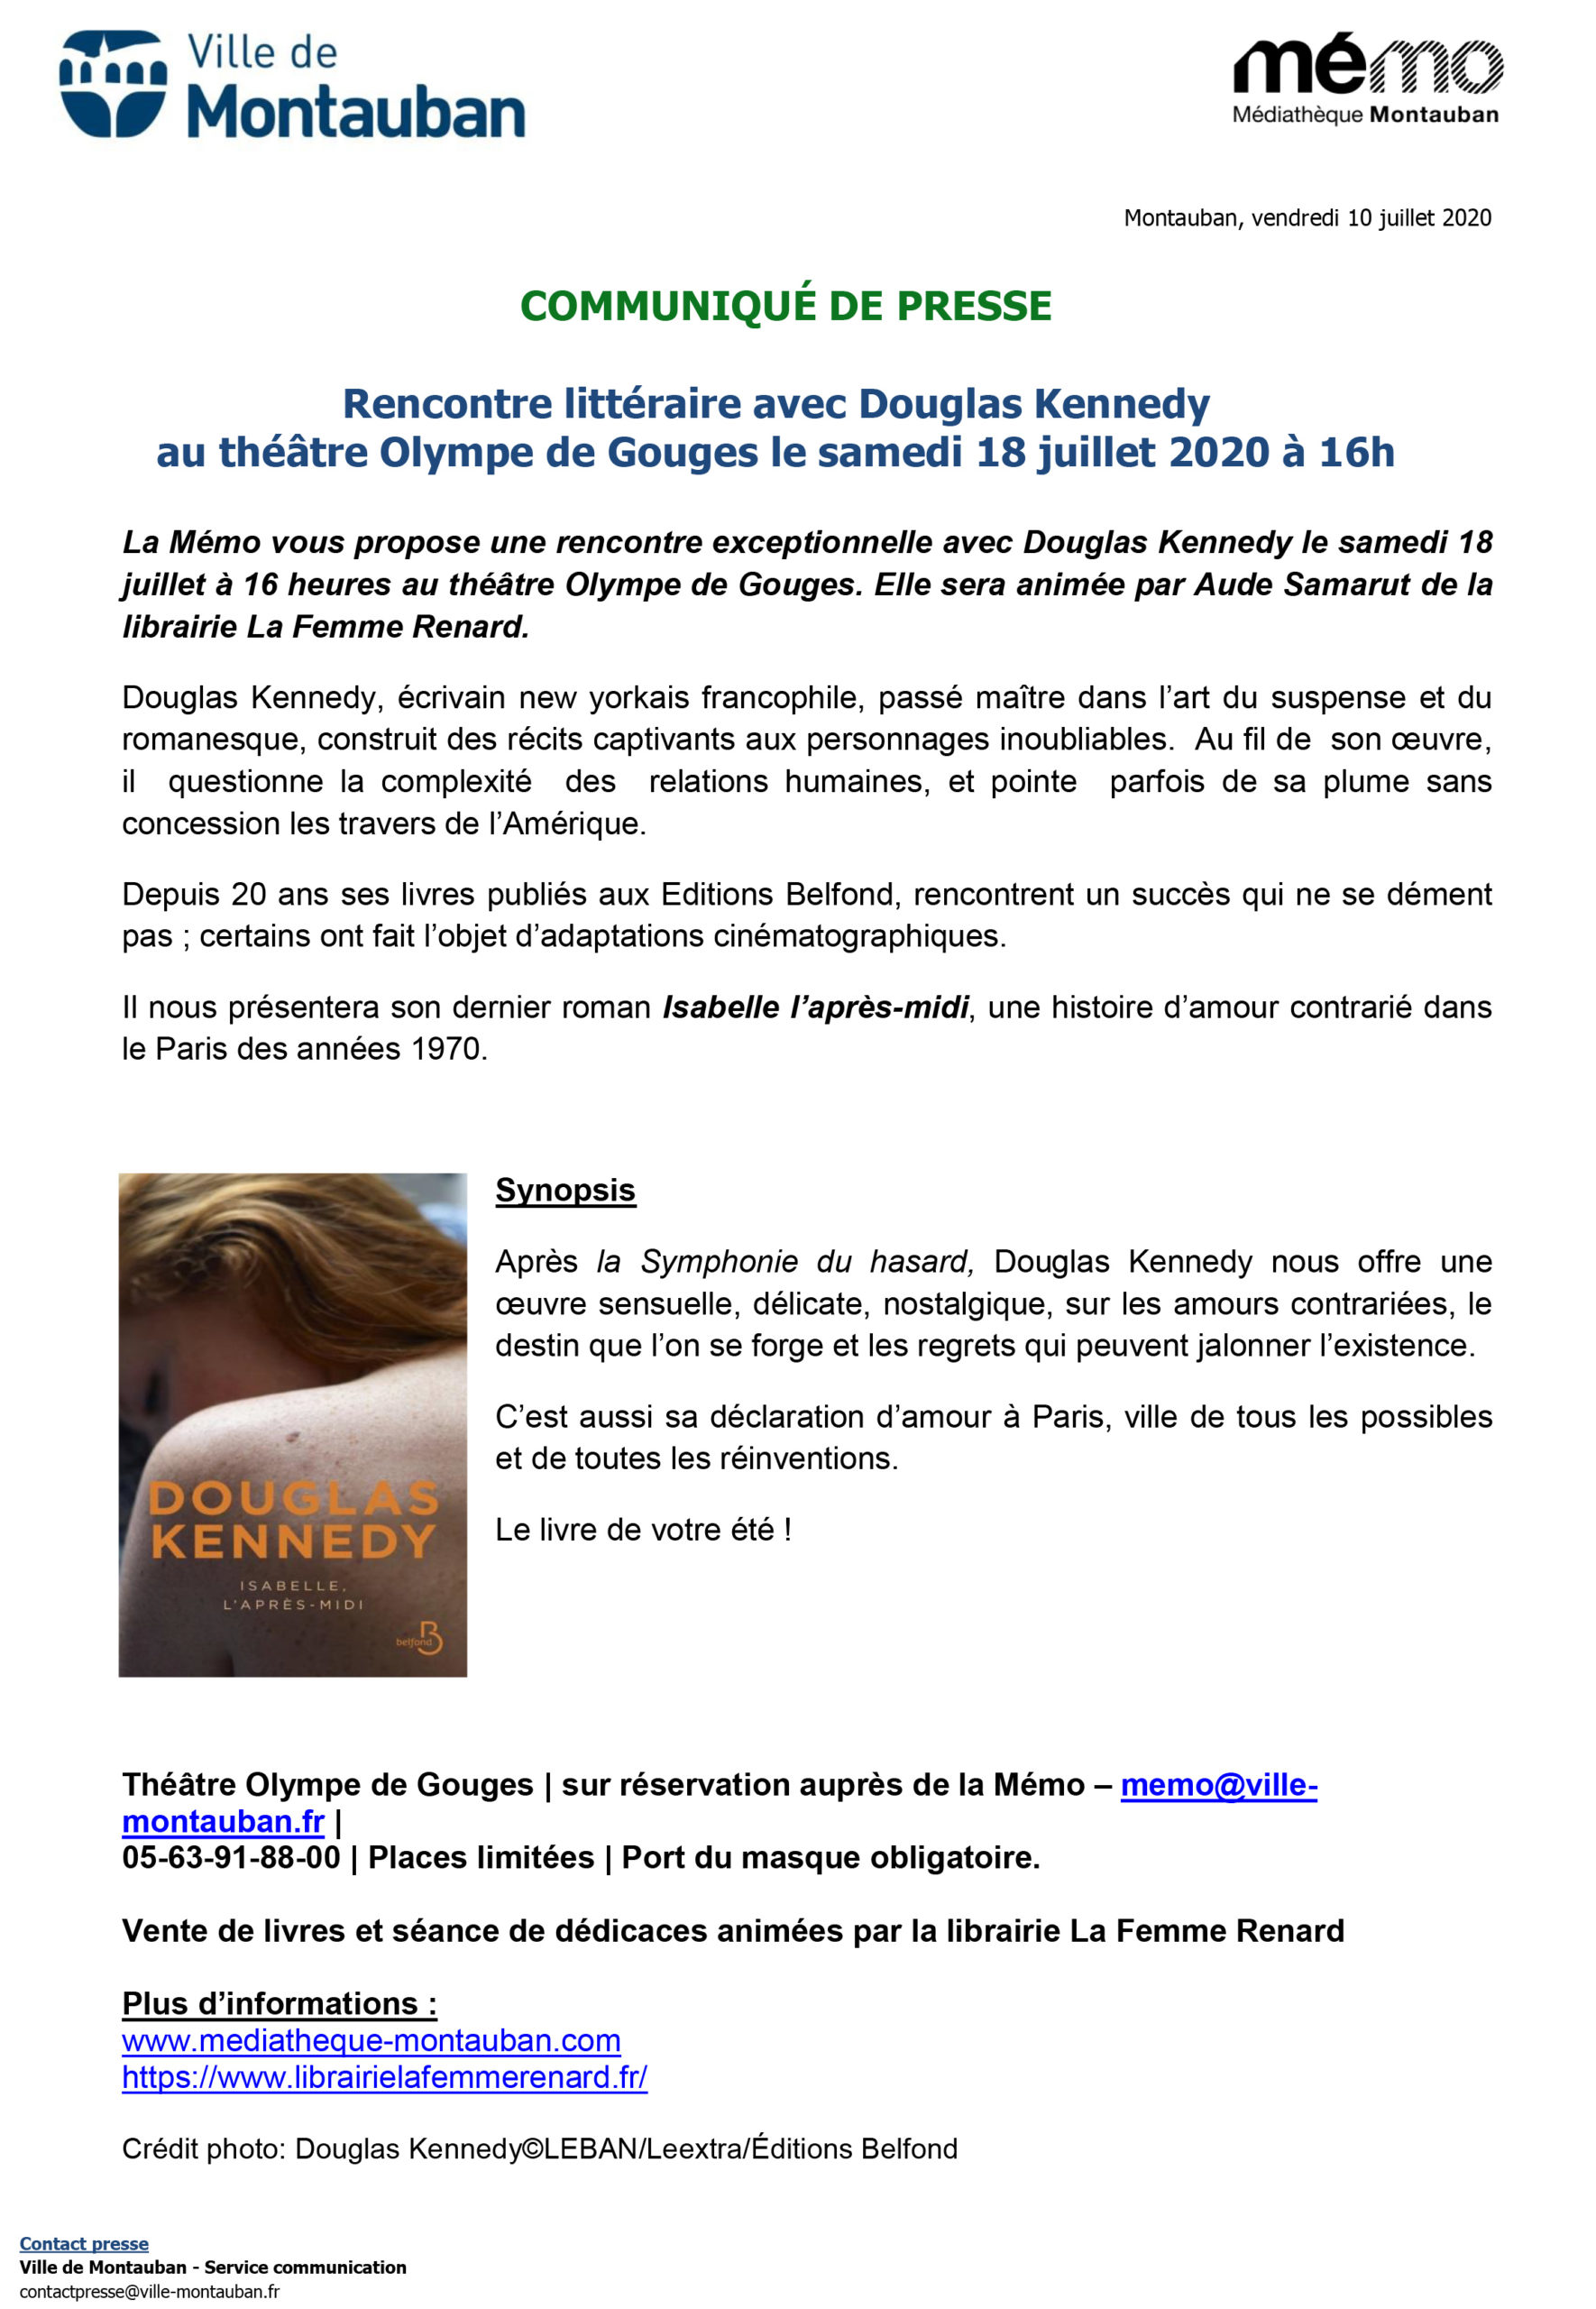 COMMUNIQUÉ DE PRESSE: Rencontre littéraire avec Douglas Kennedy au théâtre Olympe de Gouges le samedi 18 juillet 2020 à 16h